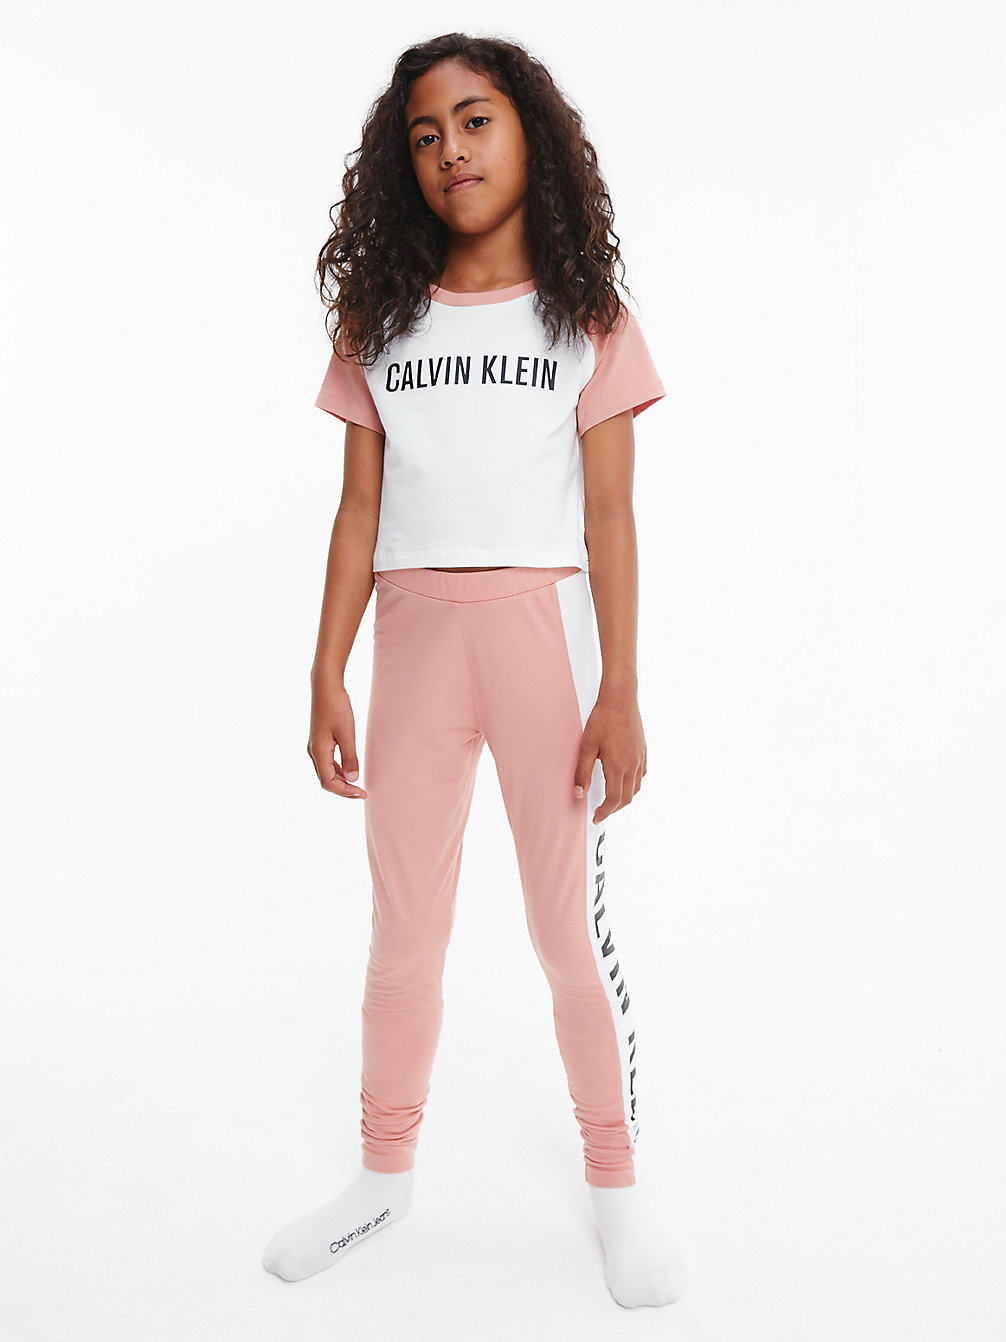 PINKMOCHA/W/PVHWHITE Pyjama-Set – Intense Power undefined Maedchen Calvin Klein